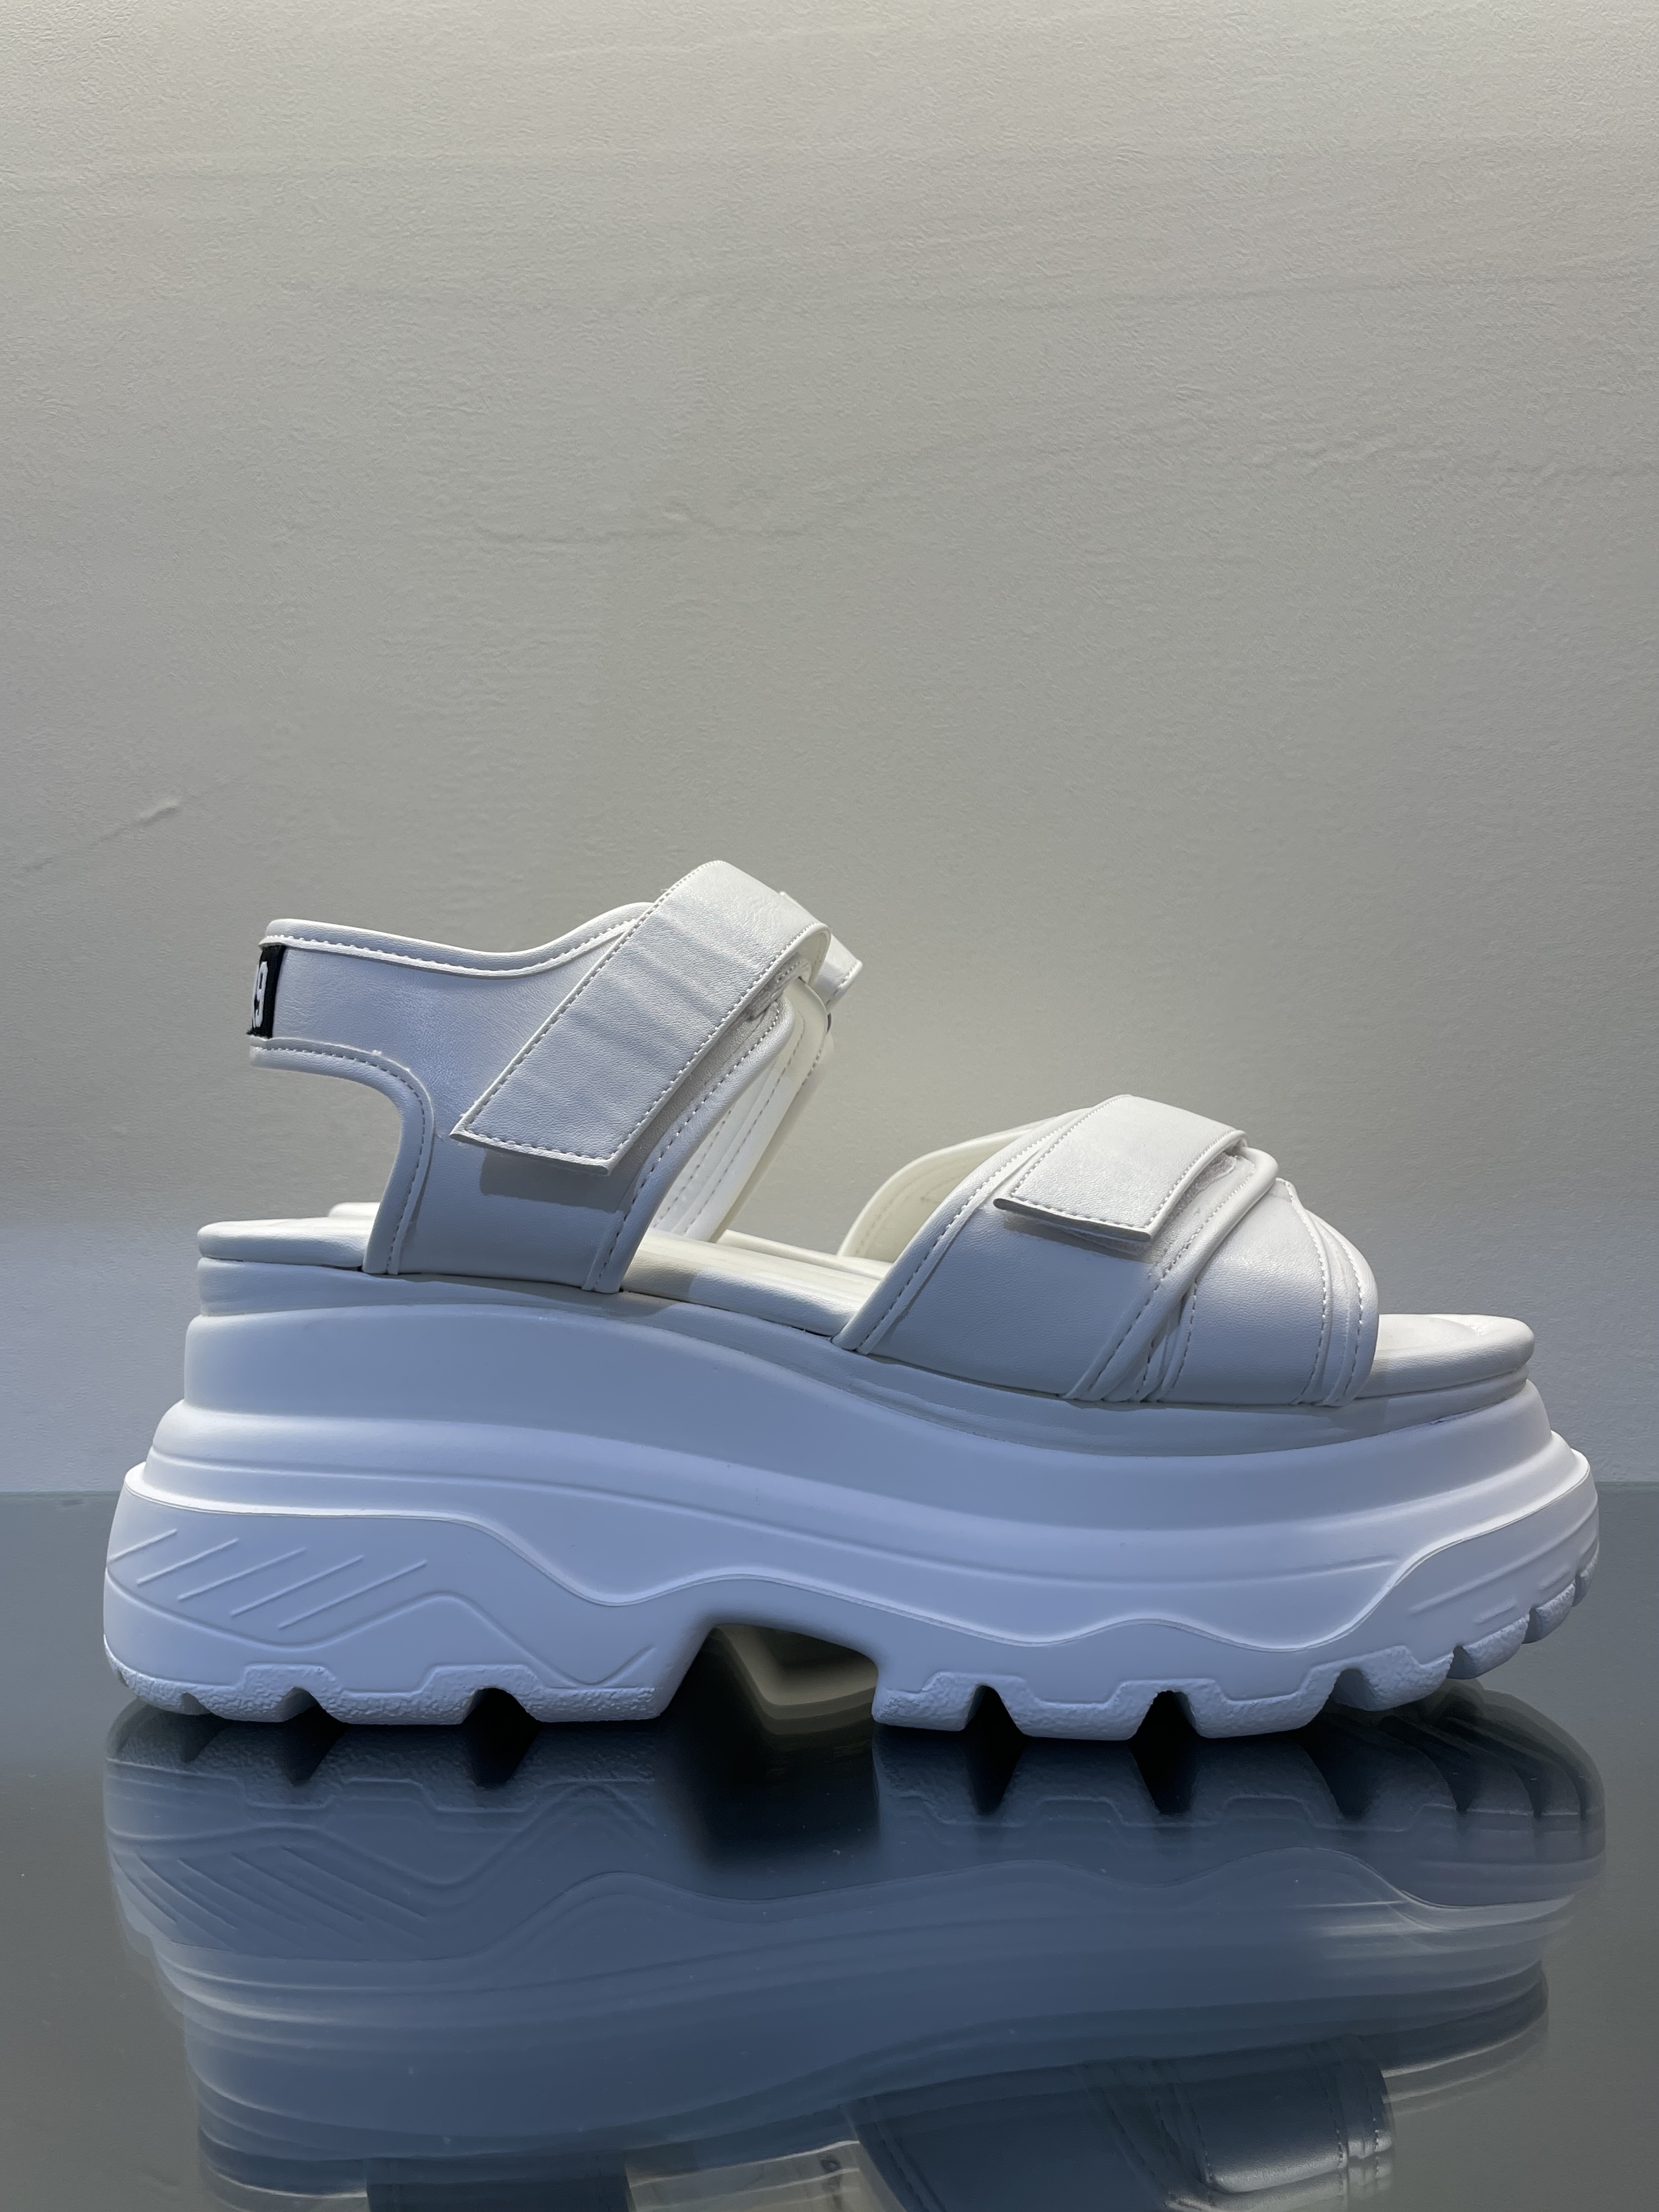 【MIRROR9】Sneaker sandals Low